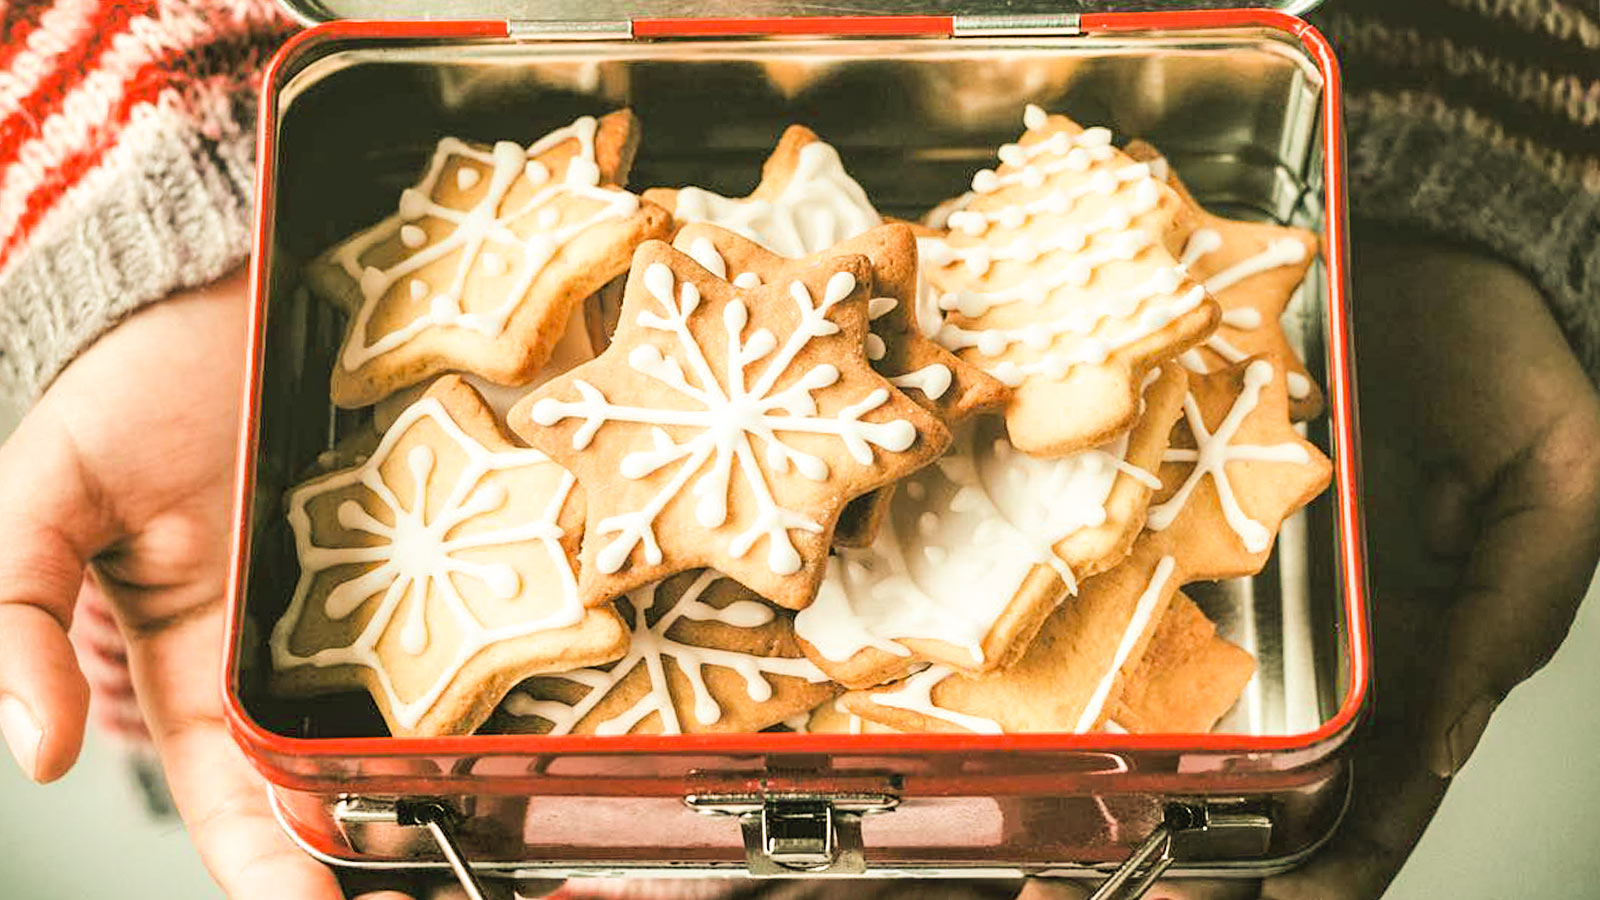 Biscotti Di Natale Al Limone.Biscotti Di Natale Con Glassa Al Limone Gnamit Il Portale Delle Ricette